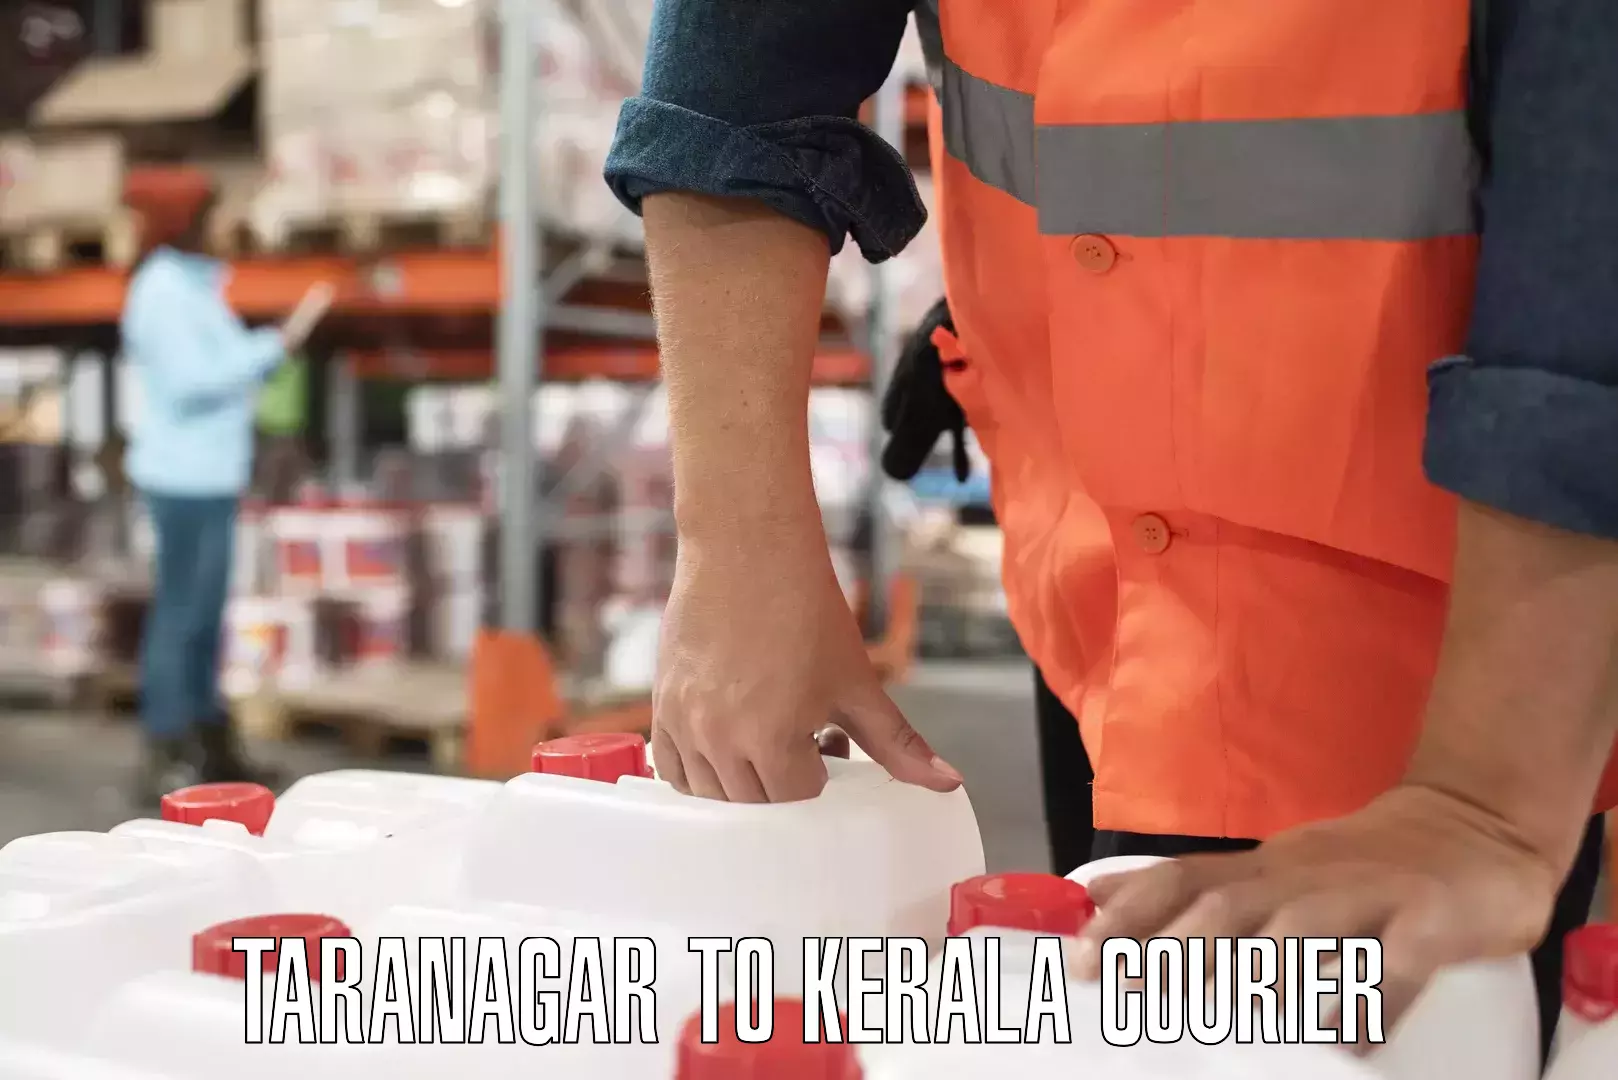 24-hour courier service Taranagar to Thiruvananthapuram